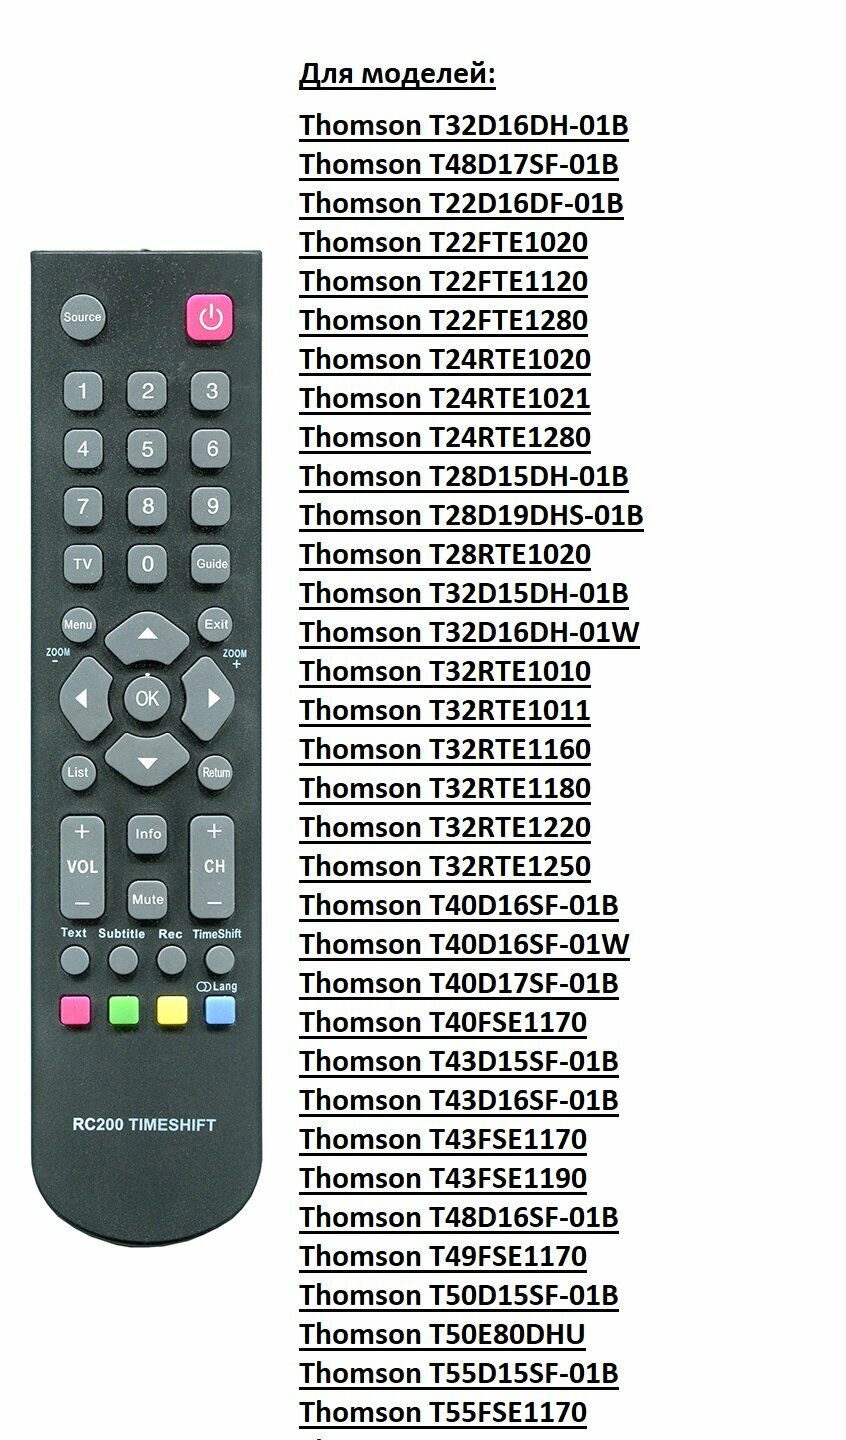 Пульт для моделей из списка Thomson T32D16DH-01B(RC200 Taimeshift)